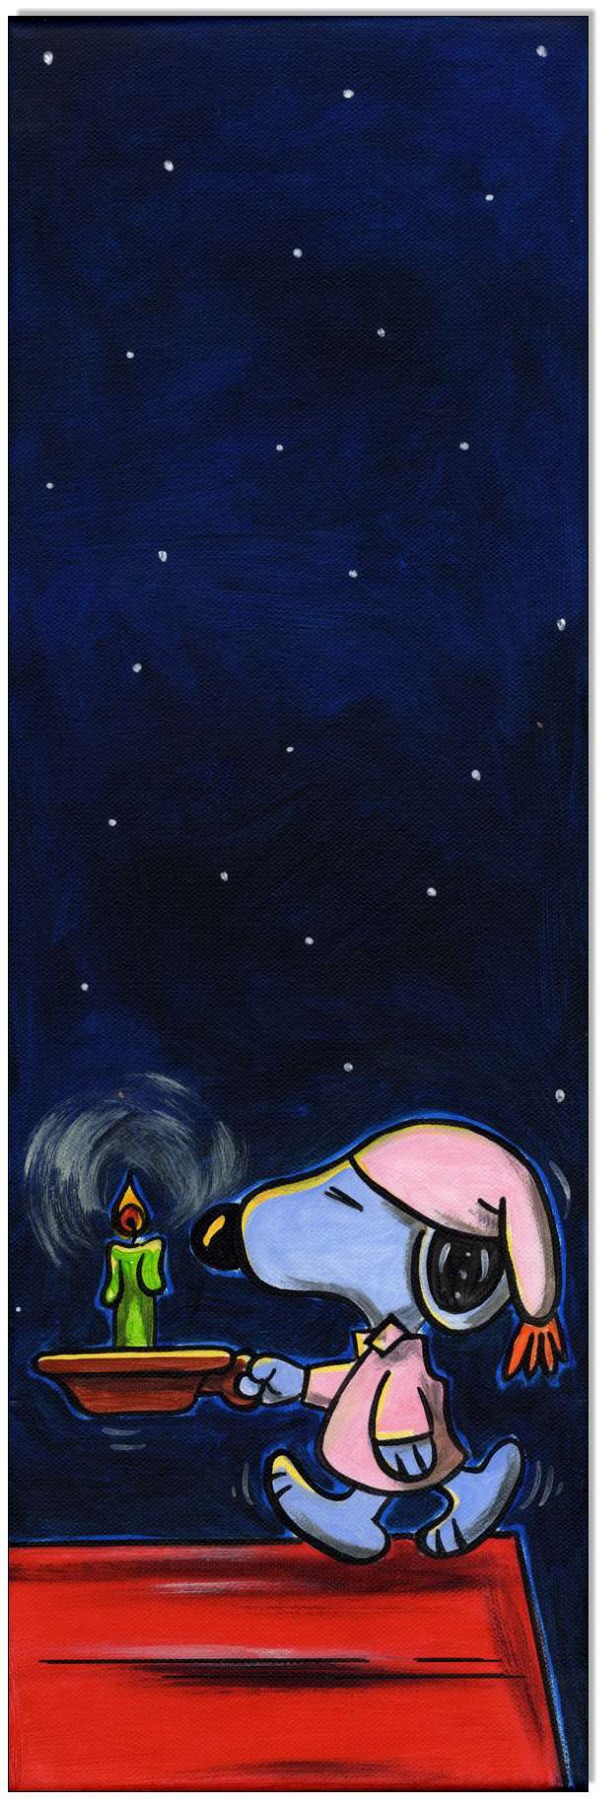 PEANUTS Good night Snoopy - 20 x 60 cm